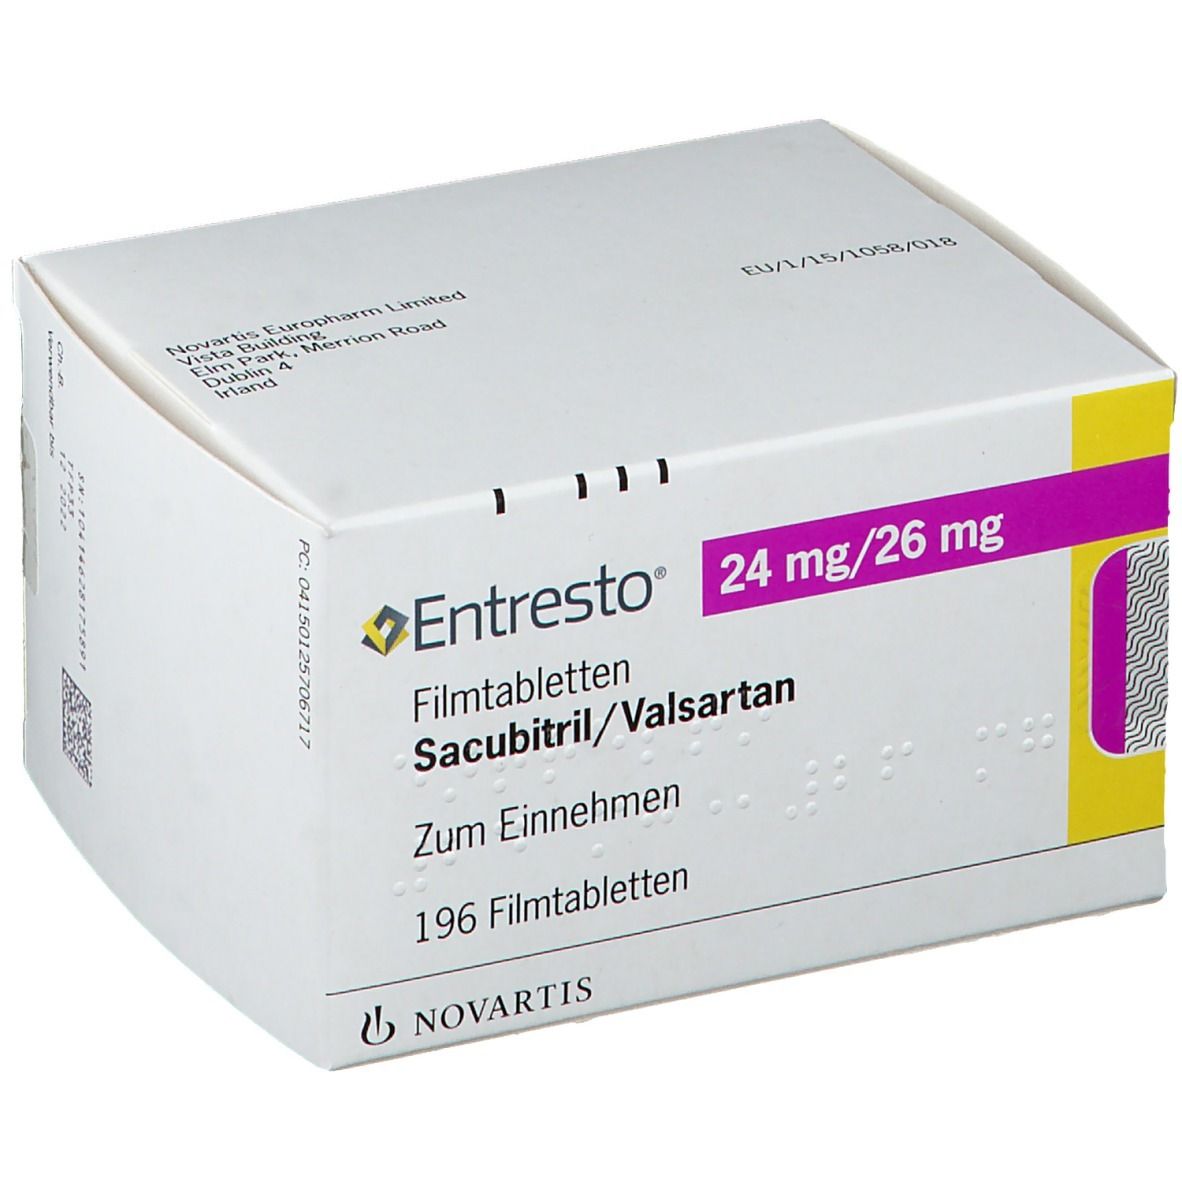 Entresto® 24 mg/26 mg